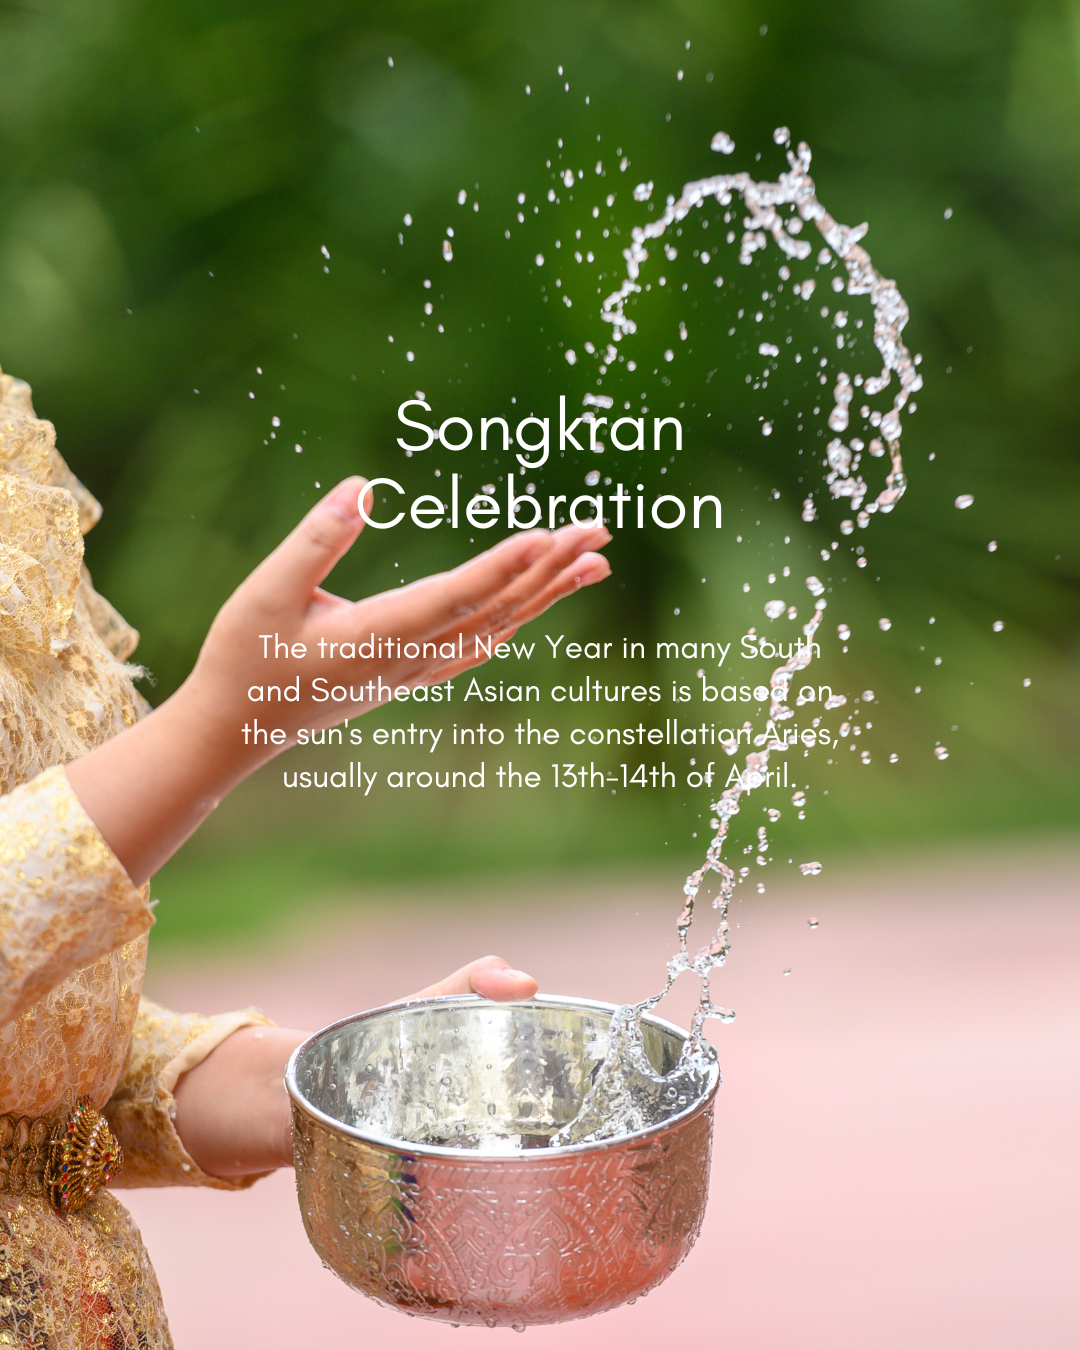 Happy Songkran! 🙏💦